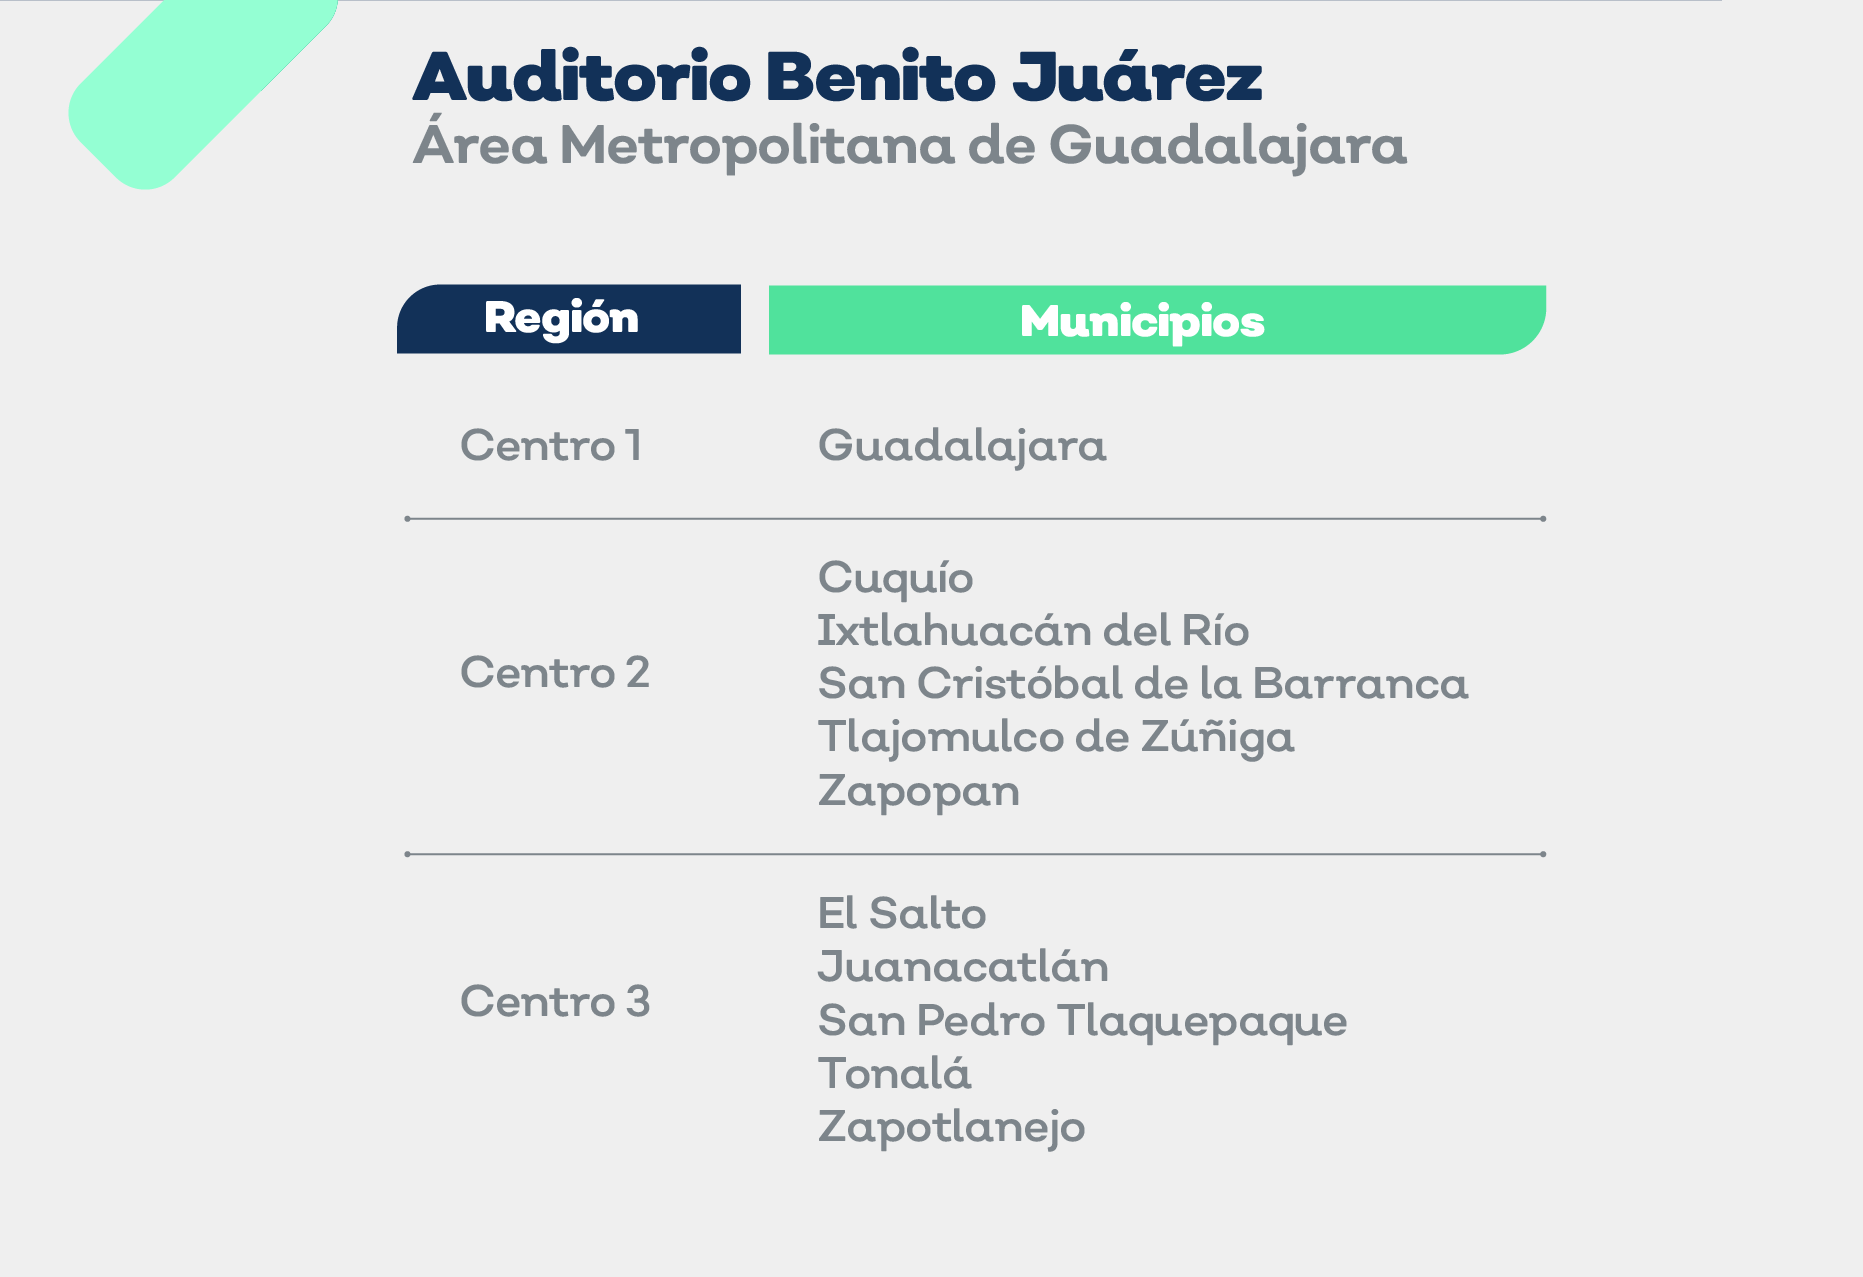 Vacunarán a maestros de El Salto, Juanacatlán y Zapotlanejo